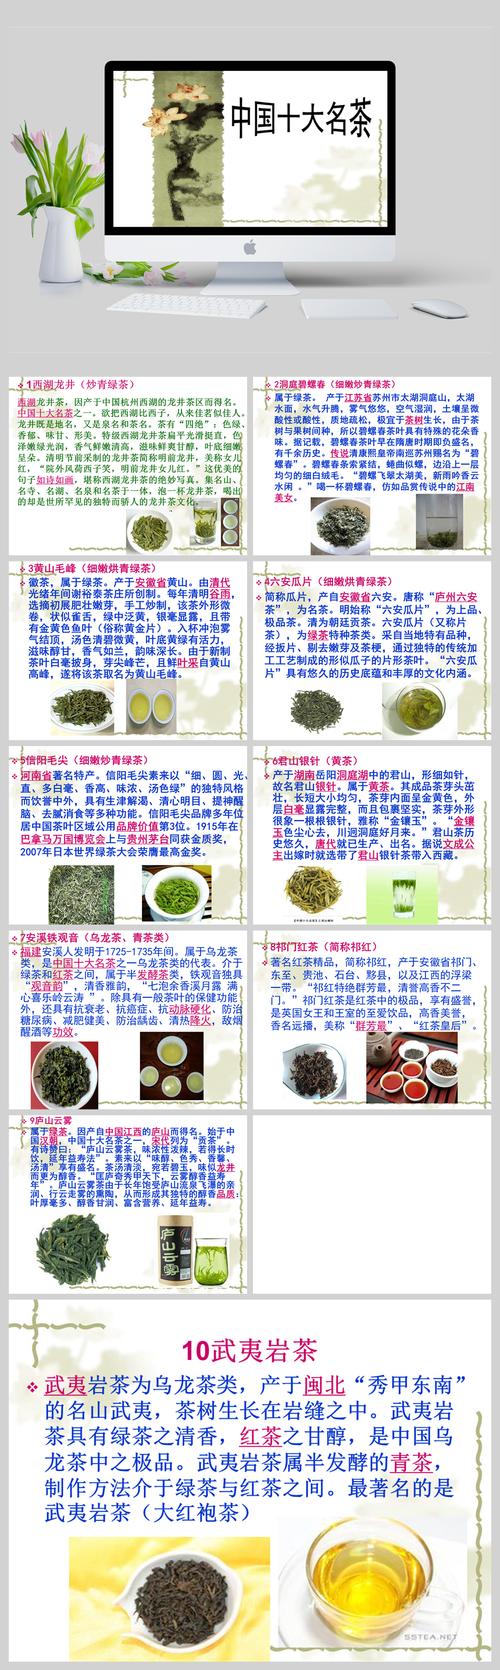 十大名茶哪个最贵,中国有哪十大名茶哪种最贵